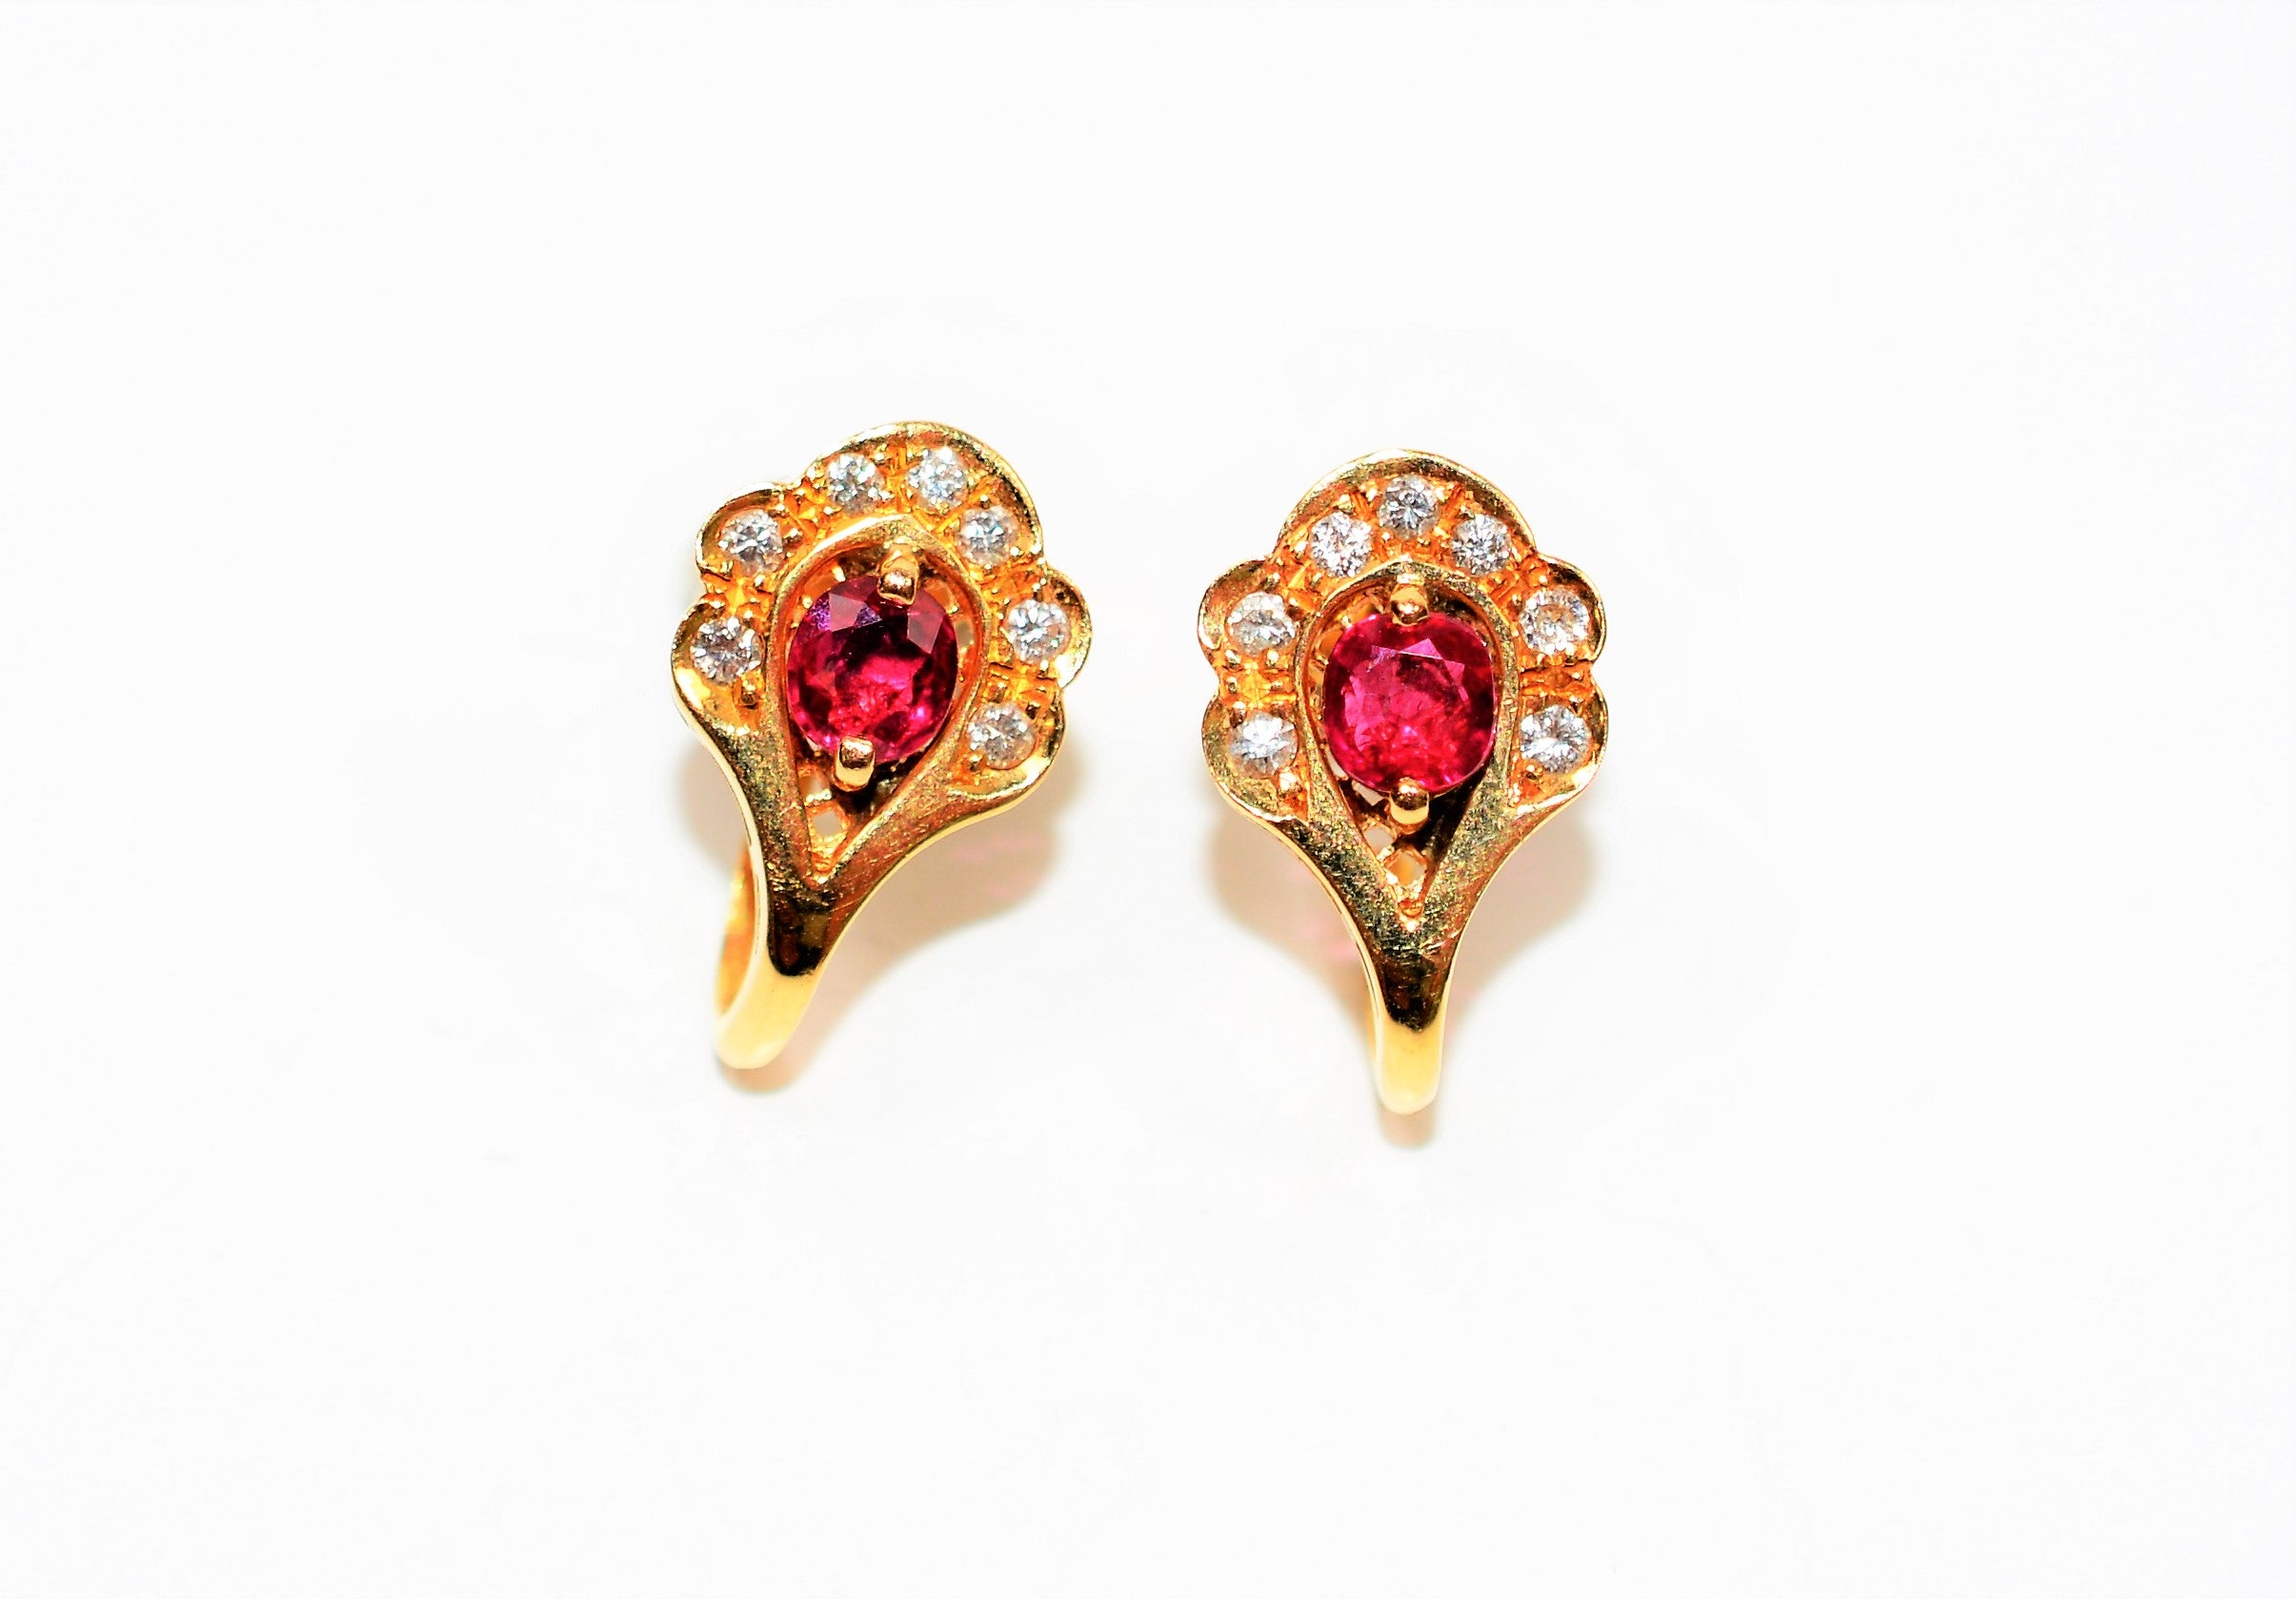 Natural Burmese Ruby & Diamond Earrings 18K Solid Gold  1.25tcw Ruby Earrings Gemstone Earrings Cocktail Earrings Statement Women's Earrings